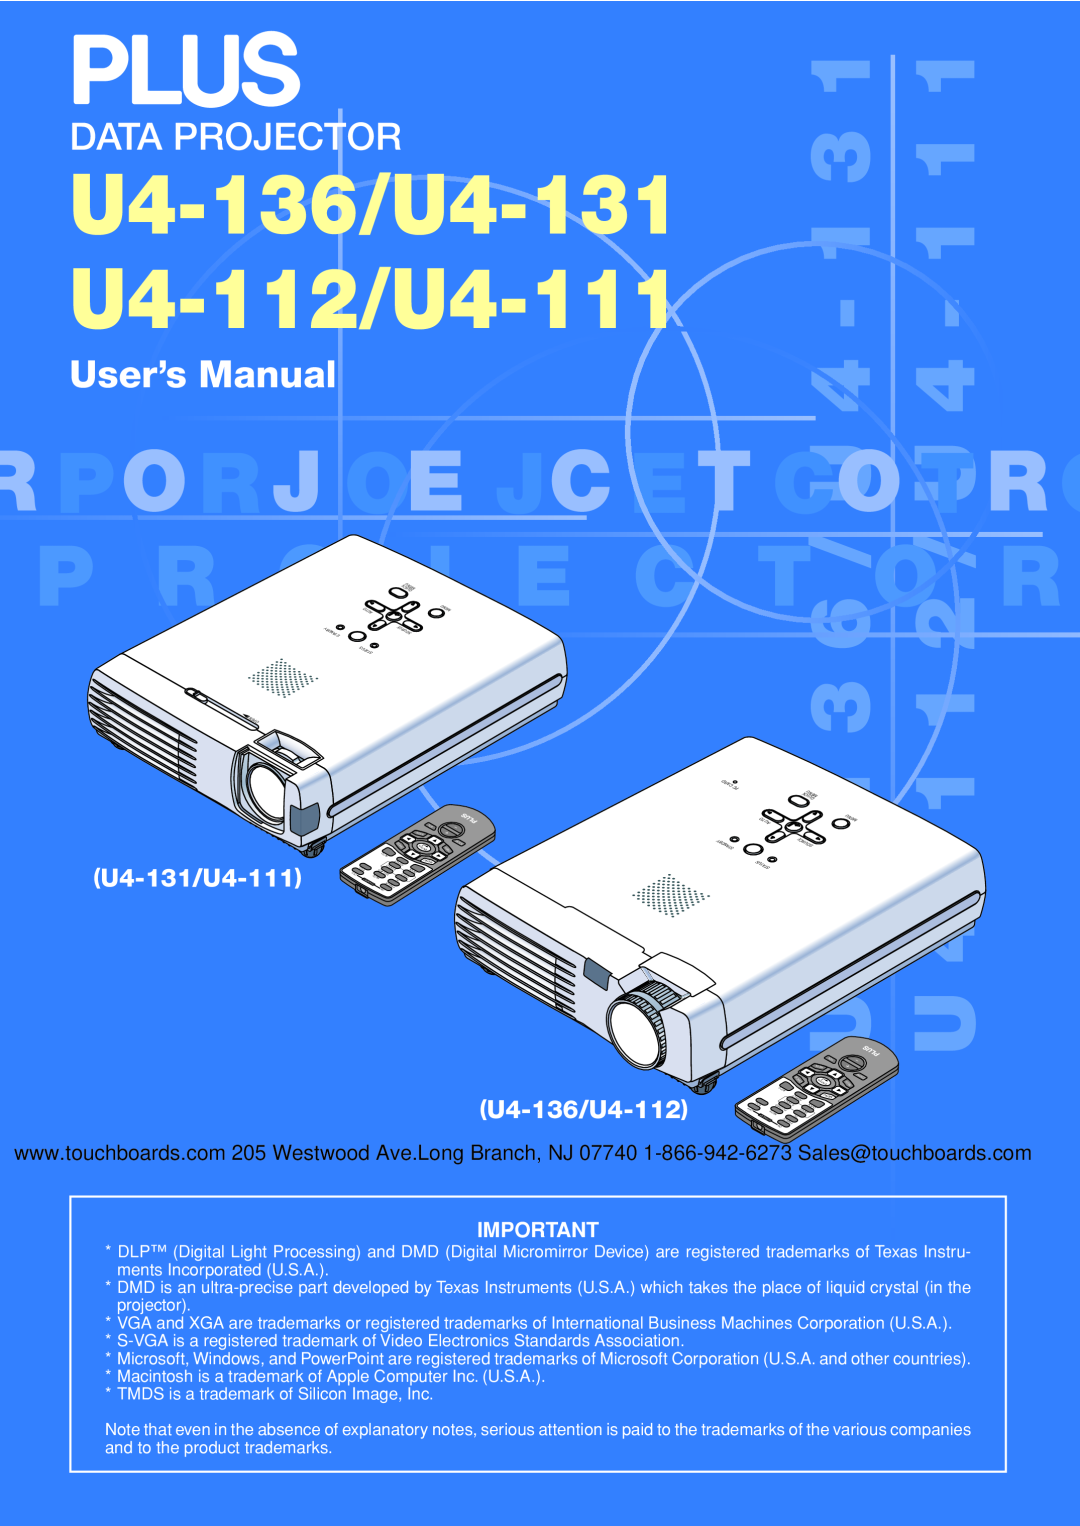 PLUS Vision user manual U4-136/U4-131 U4-112/U4-111, Data Projector, User’s Manual, U4-131/U4-111, U4-136/U4-112 